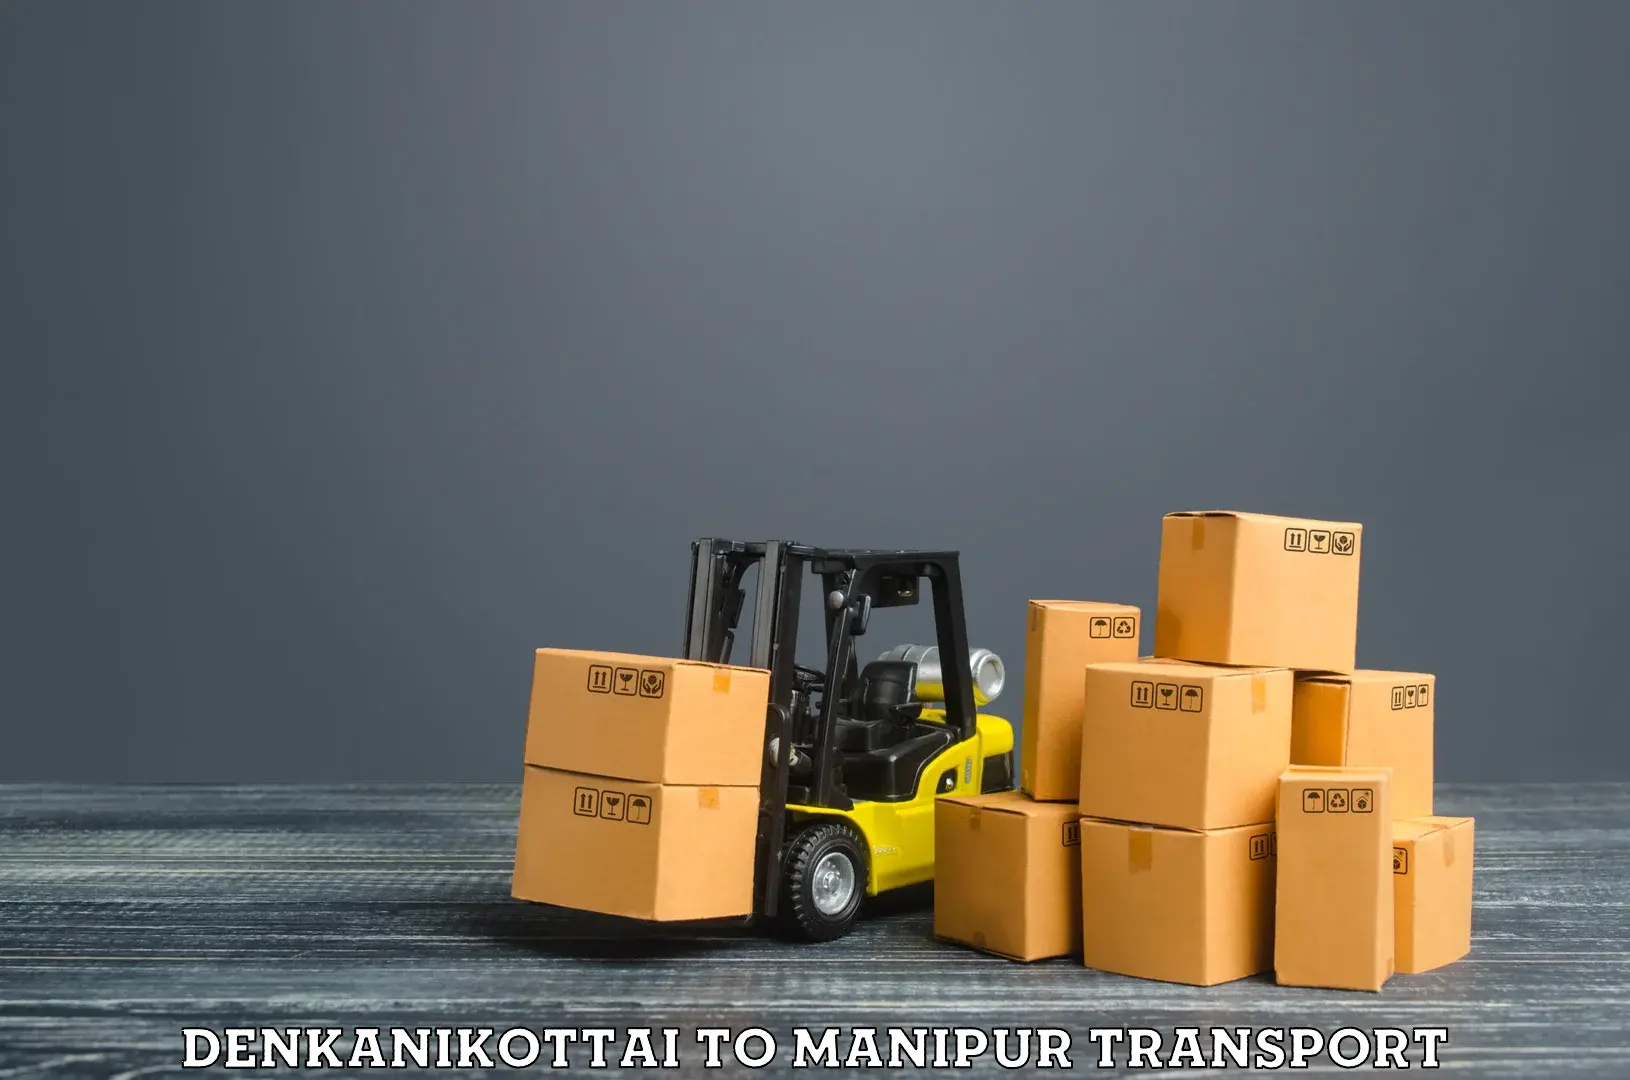 Online transport service Denkanikottai to Chandel